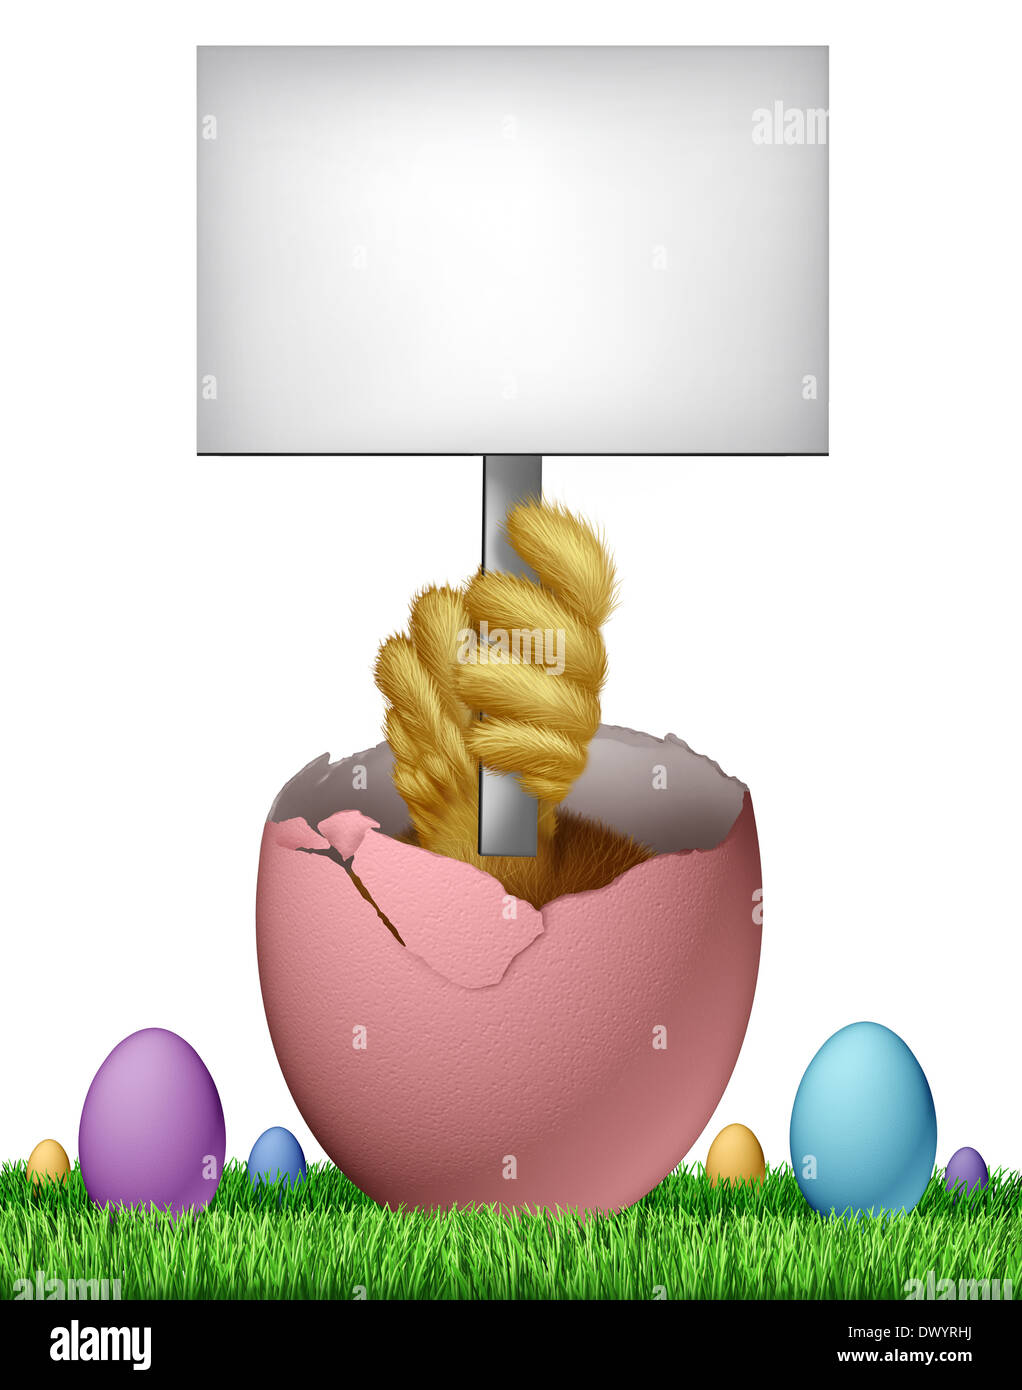 Leere Zeichen Osterkarte mit einem Baby-Küken entstehen aus einem gebrochenen rosa Ei mit einem Flügel hält einen weiße Karte Banner als Spaß Frühjahr Symbol der Feier Urlaub und als eine Werbung marketing Botschaft. Stockfoto